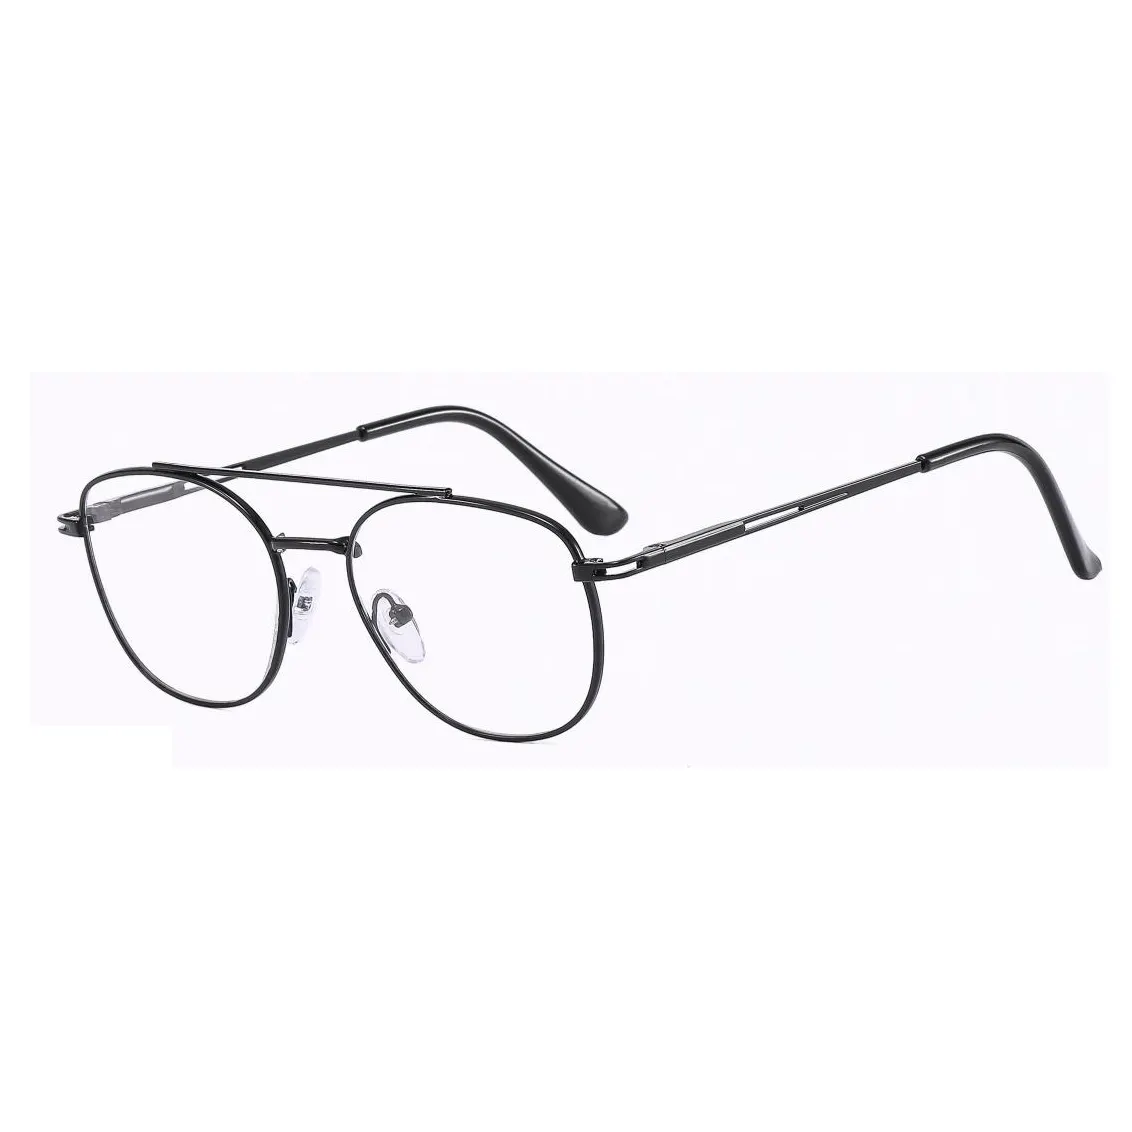 SH kacamata kaca polos bisnis wanita, bingkai kacamata Logo kustom rangka logam optik modis